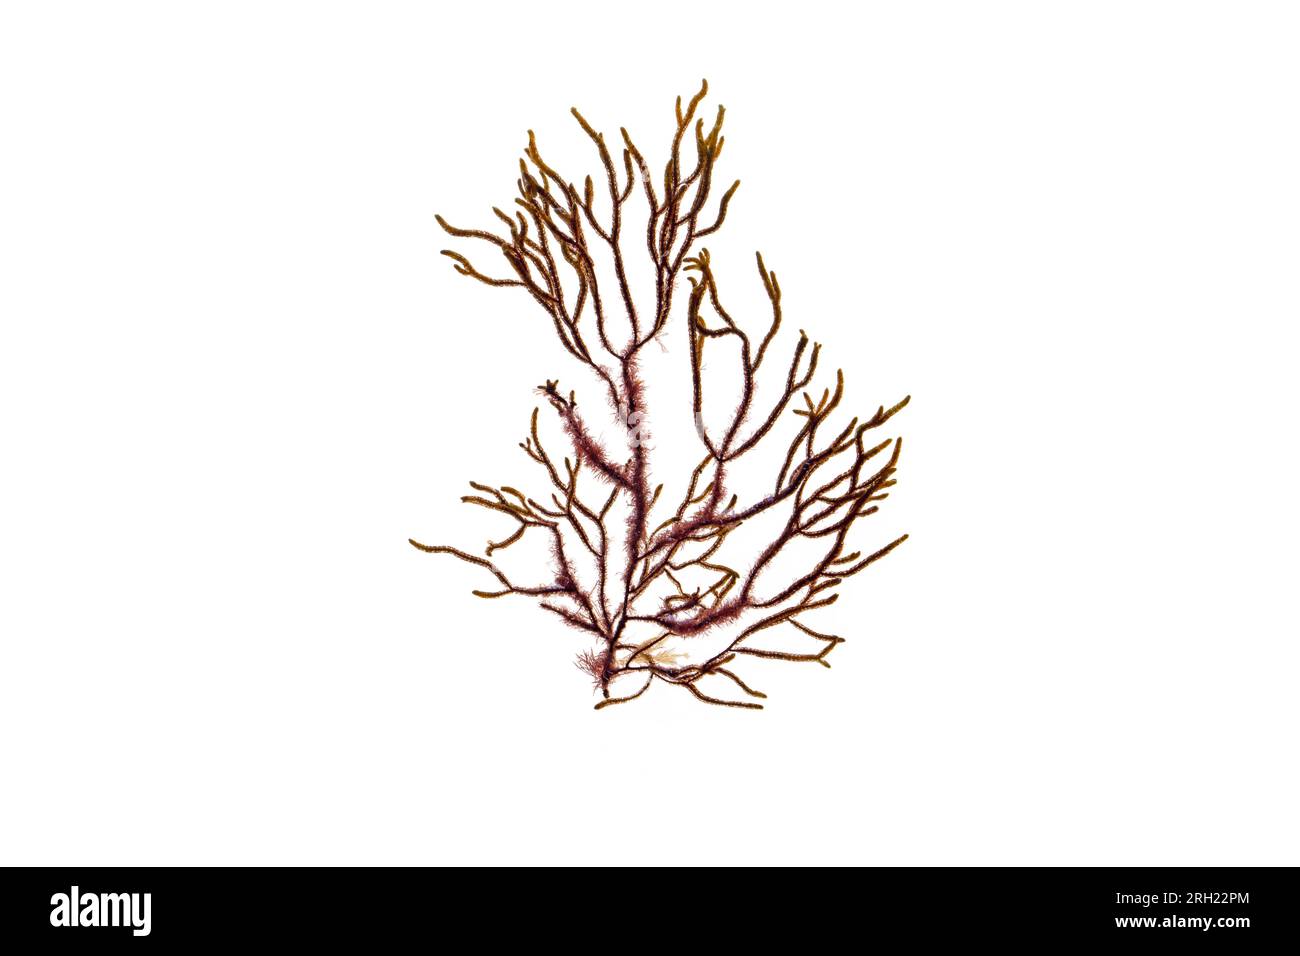 Cladostephus spongiosus mit Corallinalge Jania rubens, die als Epiphyte an der Frondenbasis wächst. Cladostephus verticillatus braune Algenisol Stockfoto